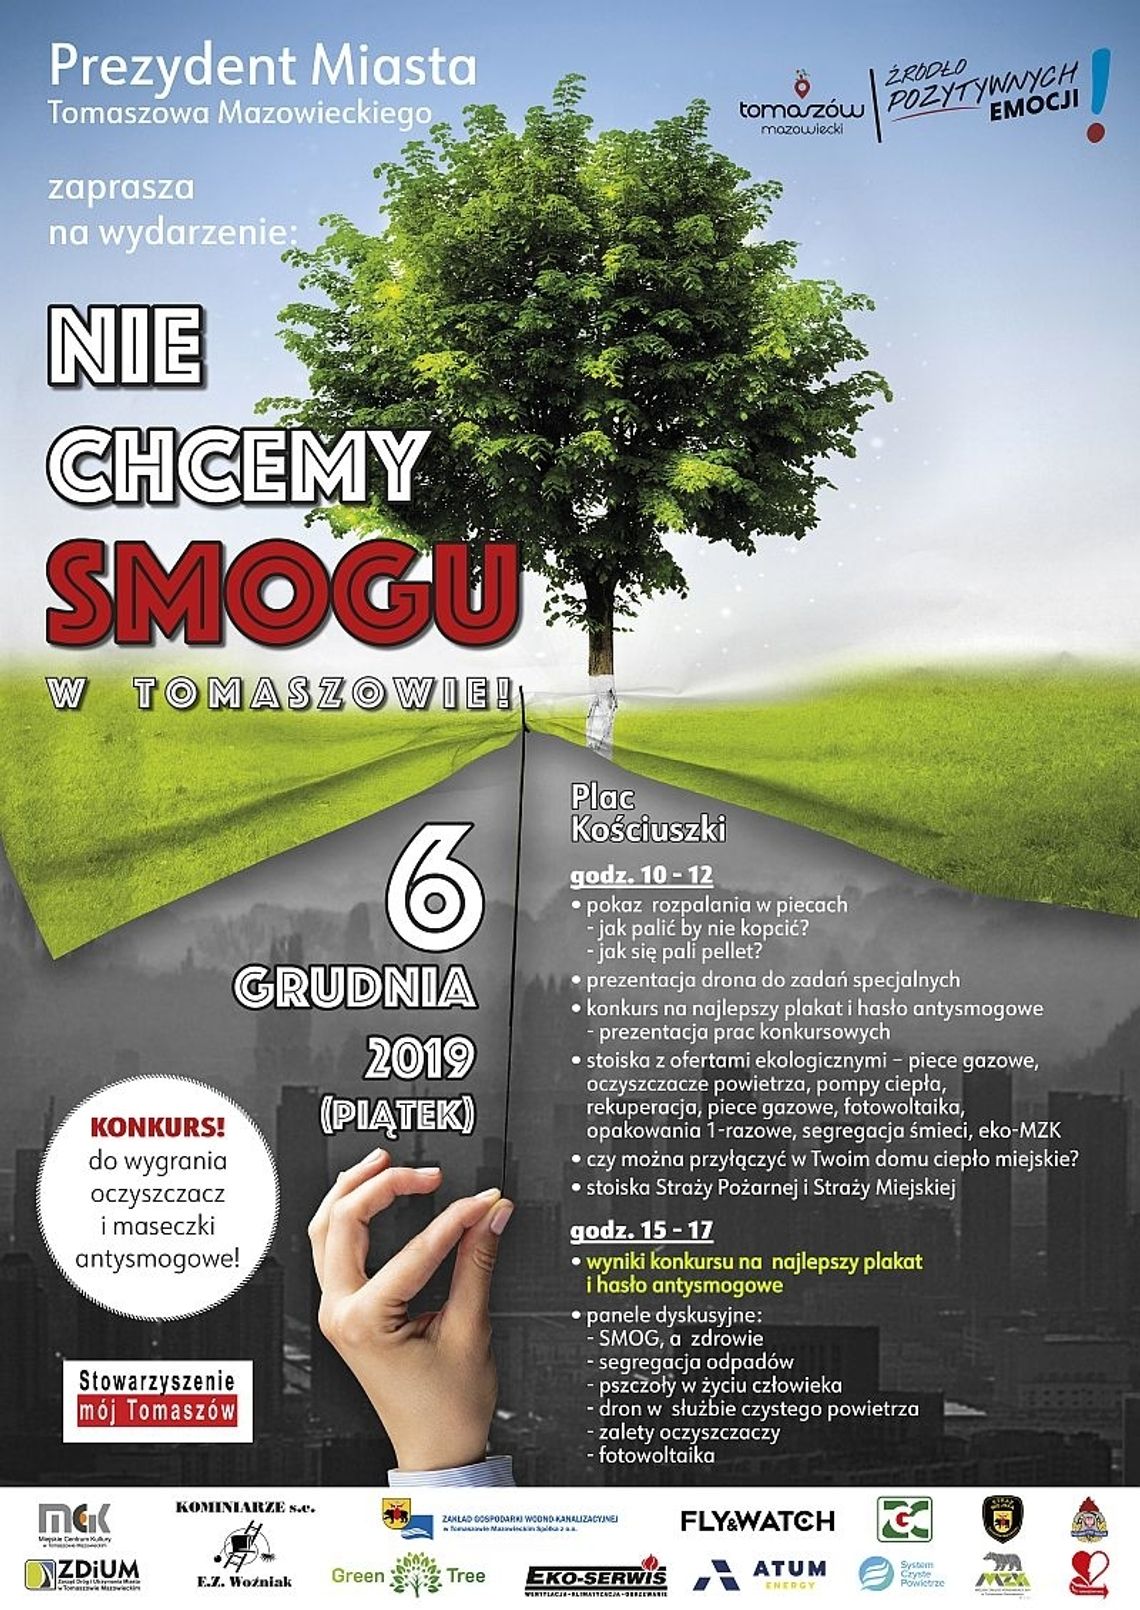 „Nie chcemy smogu w Tomaszowie” - w programie: panel dyskusyjny, stoiska informacyjne i punkty konsultacyjne, pokaz rozpalania odgórnego i oddolnego w piecu, konkurs na hasło lub plakat 